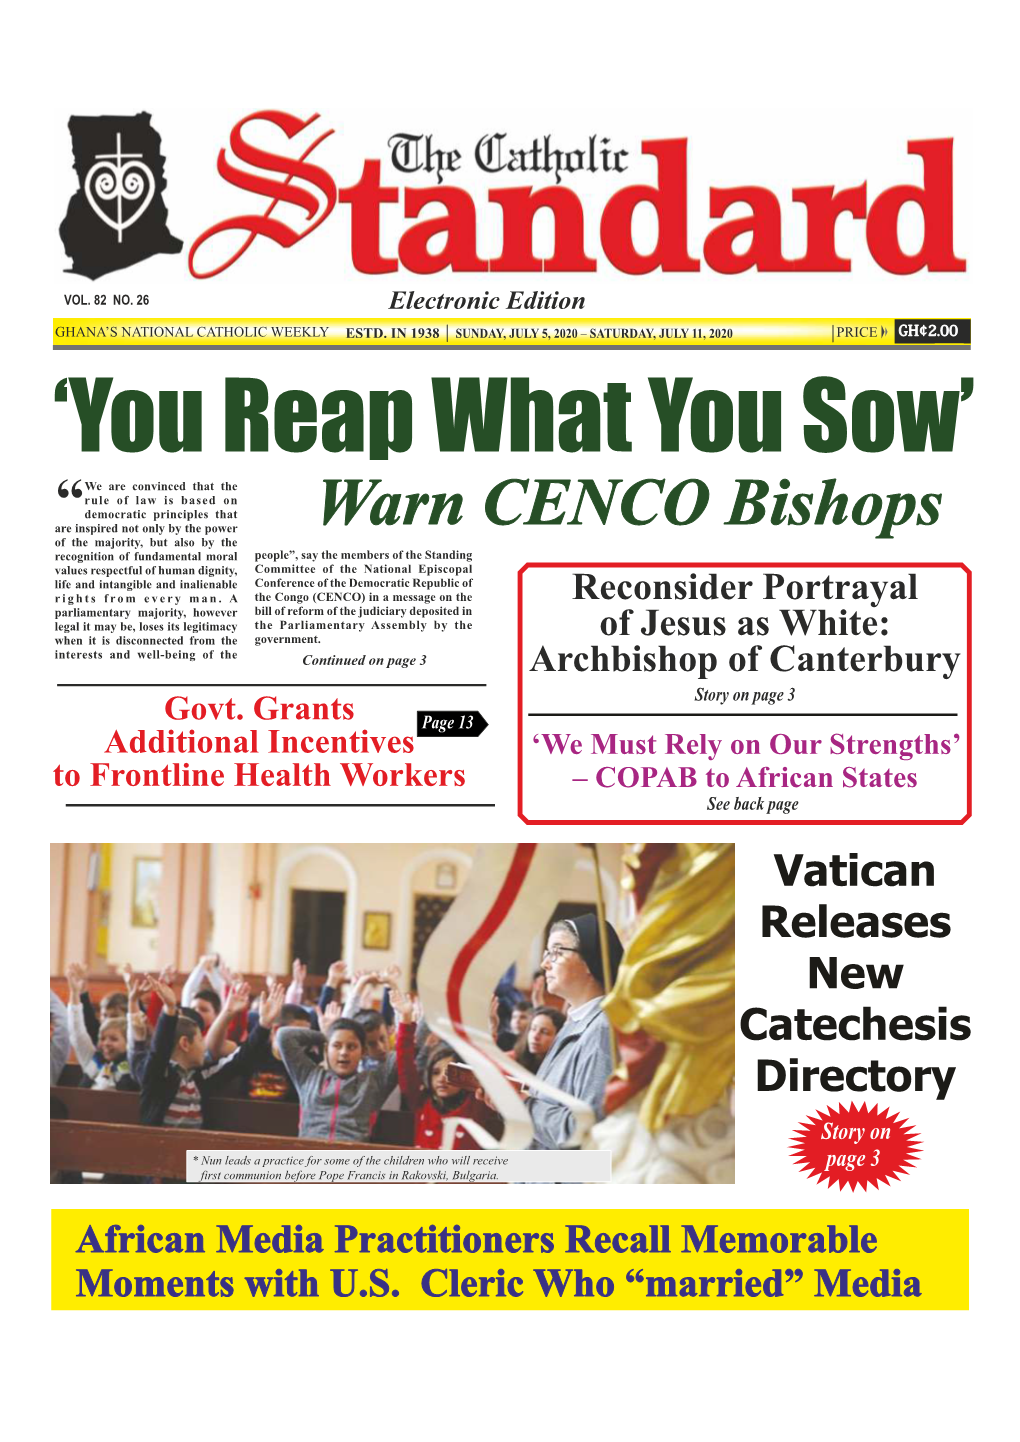 The Catholic Standard, Sunday, July 5